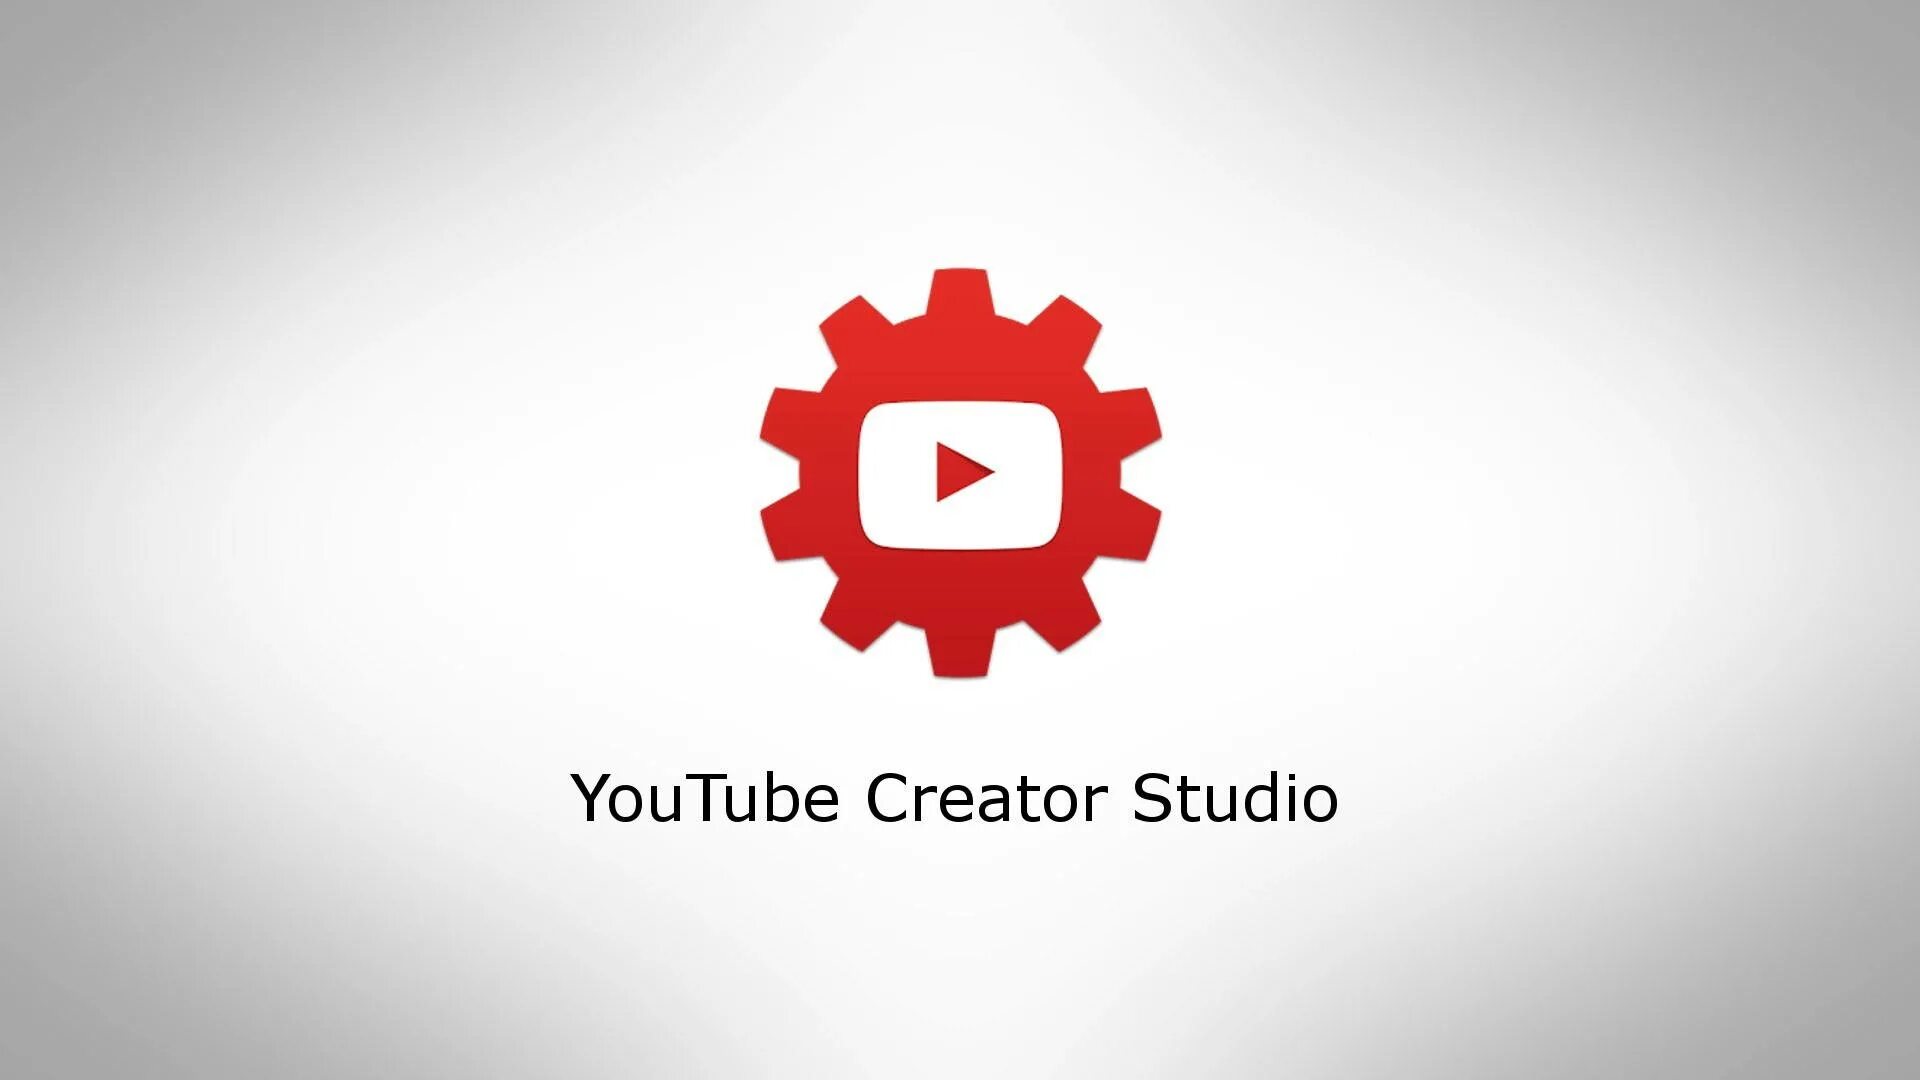 Ютуб пк версия войти творческая студия. Youtube Studio. Ютуб студия. Youtube creator Studio. Творческая студия ютуб.